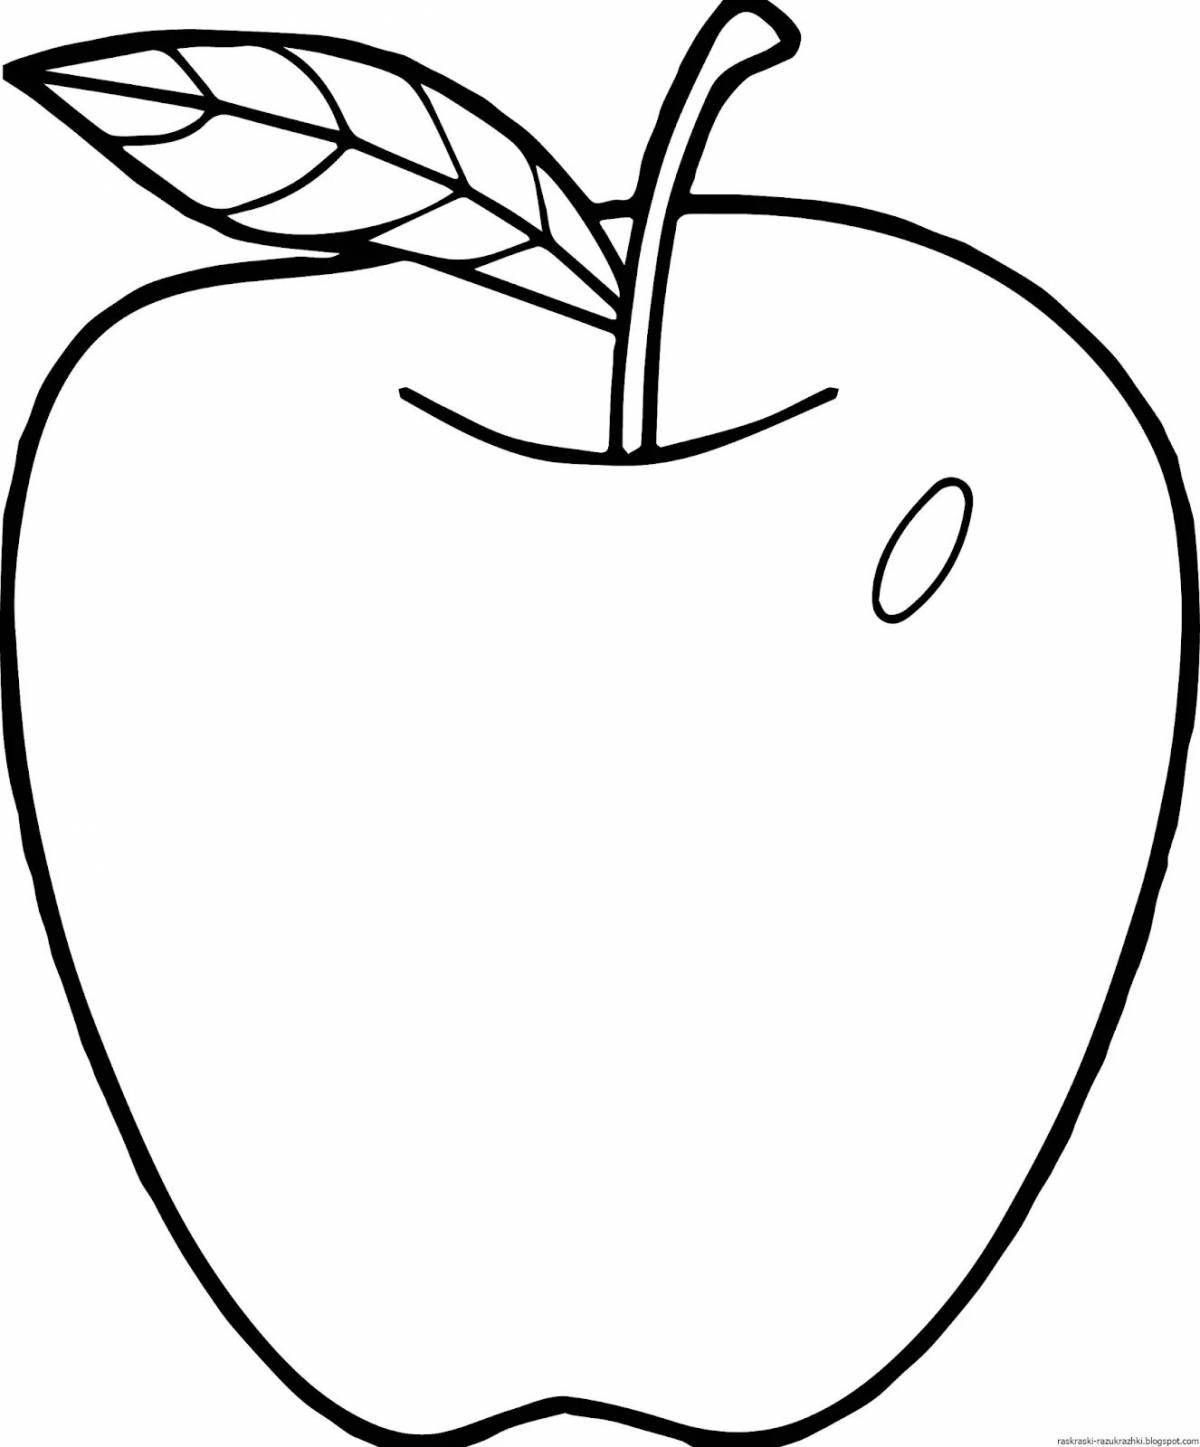 Увлекательная раскраска apple для детей 4-5 лет